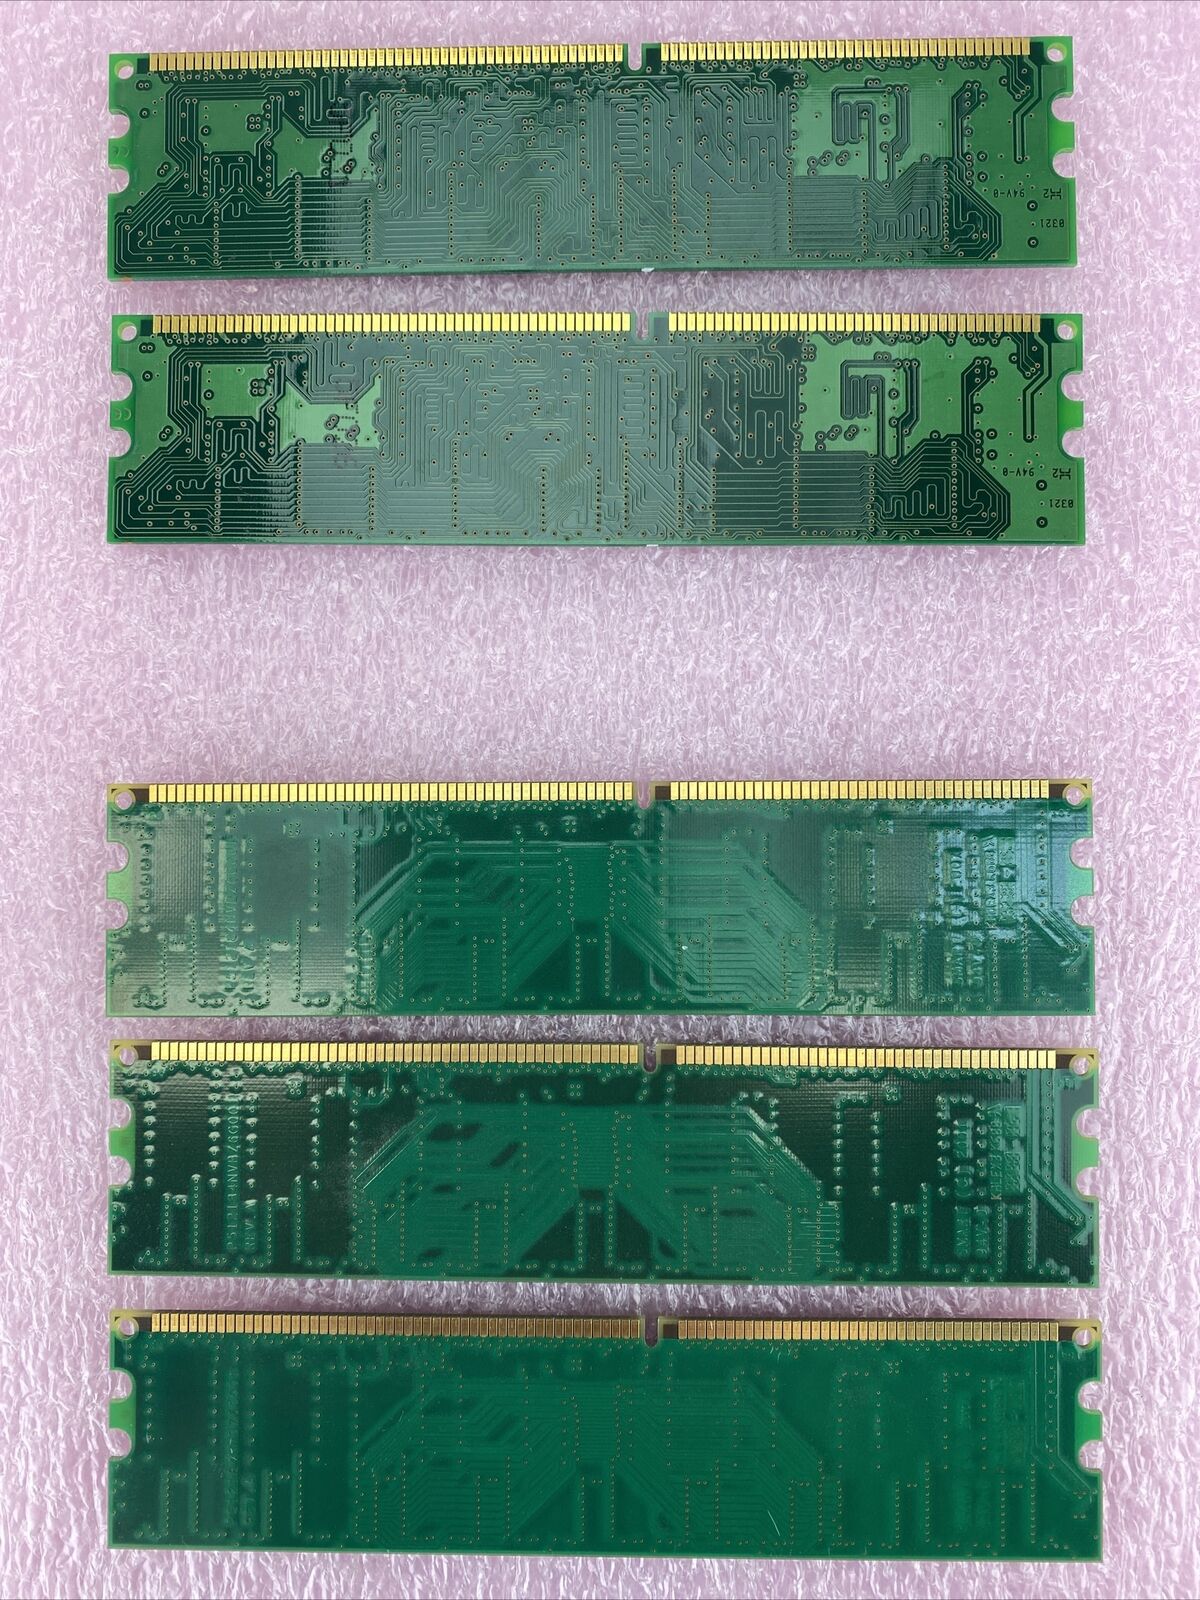 Nanya NT128D64SH4B1G-75B + Compaq PF0211264702 PC2100U DDR 266MHz CL2.5 128MB